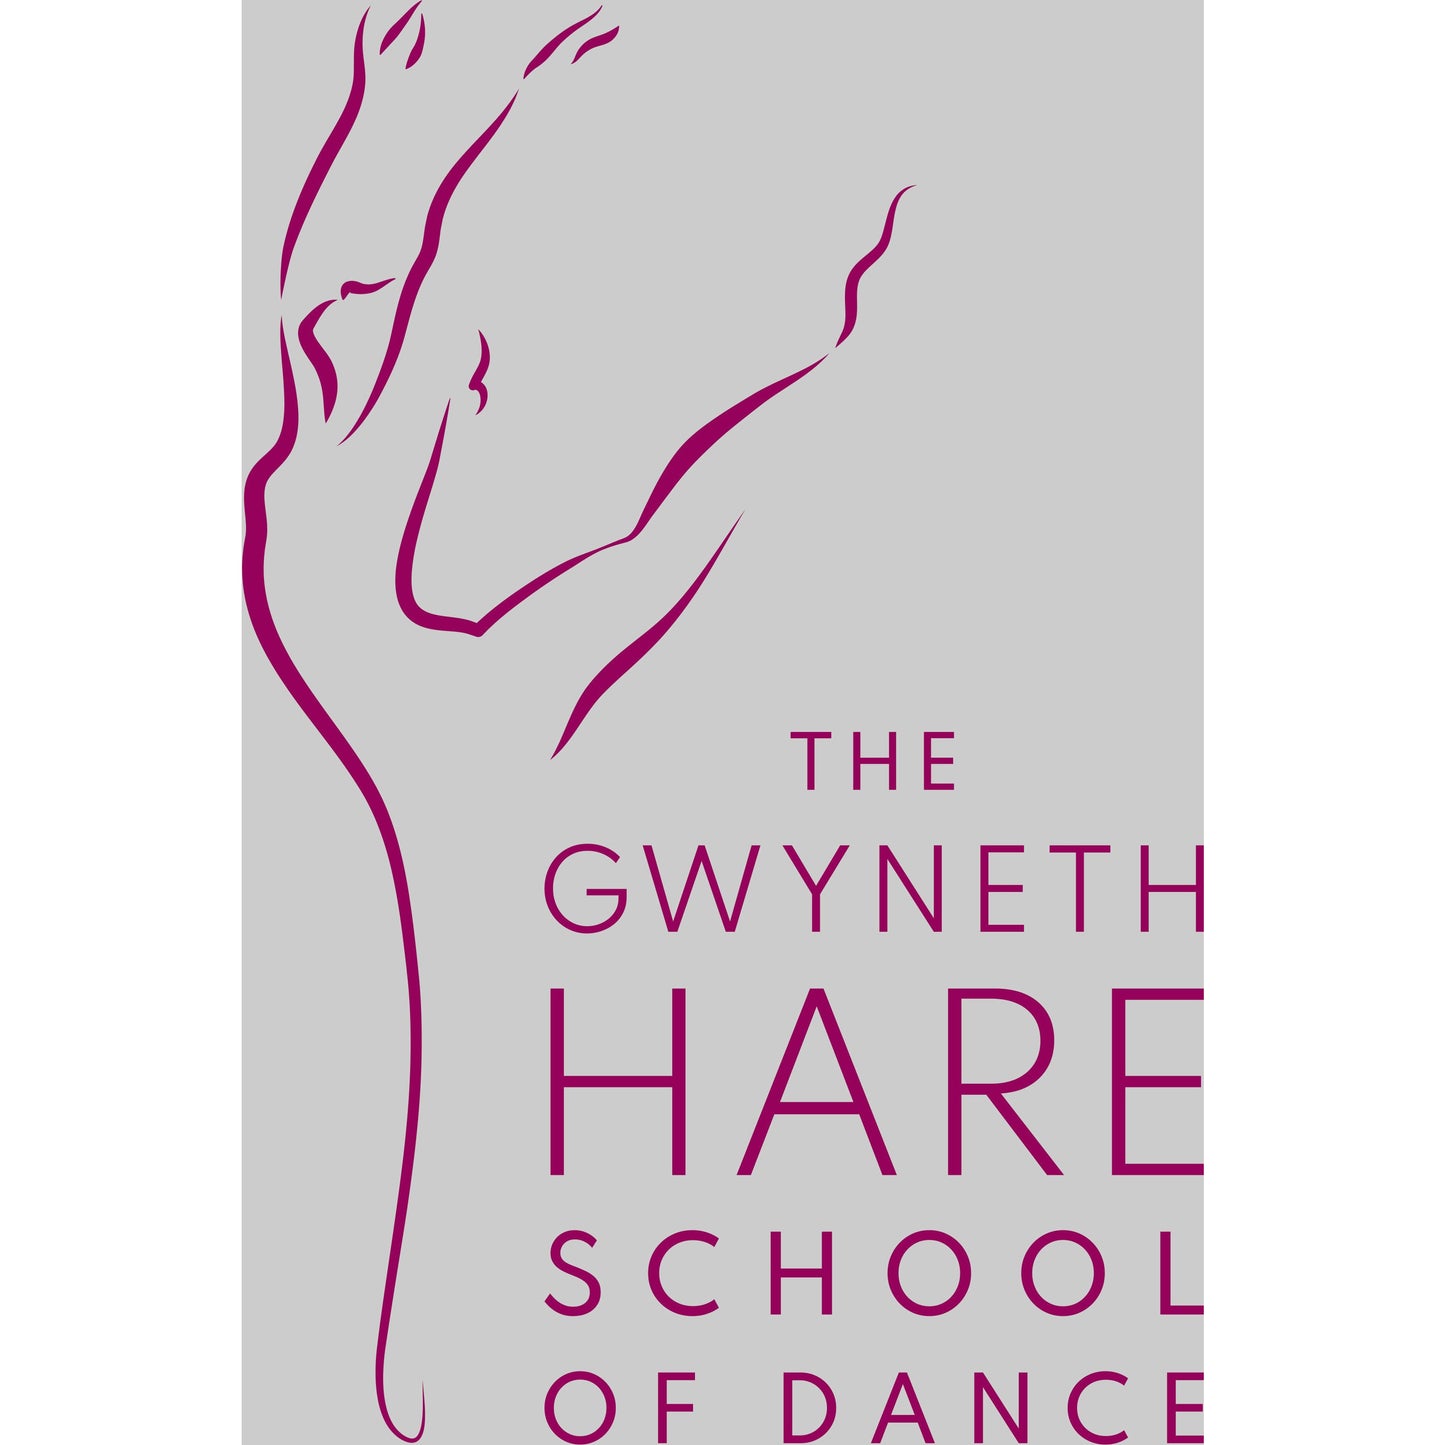 Gwyneth Hare School of Dance - Onesie